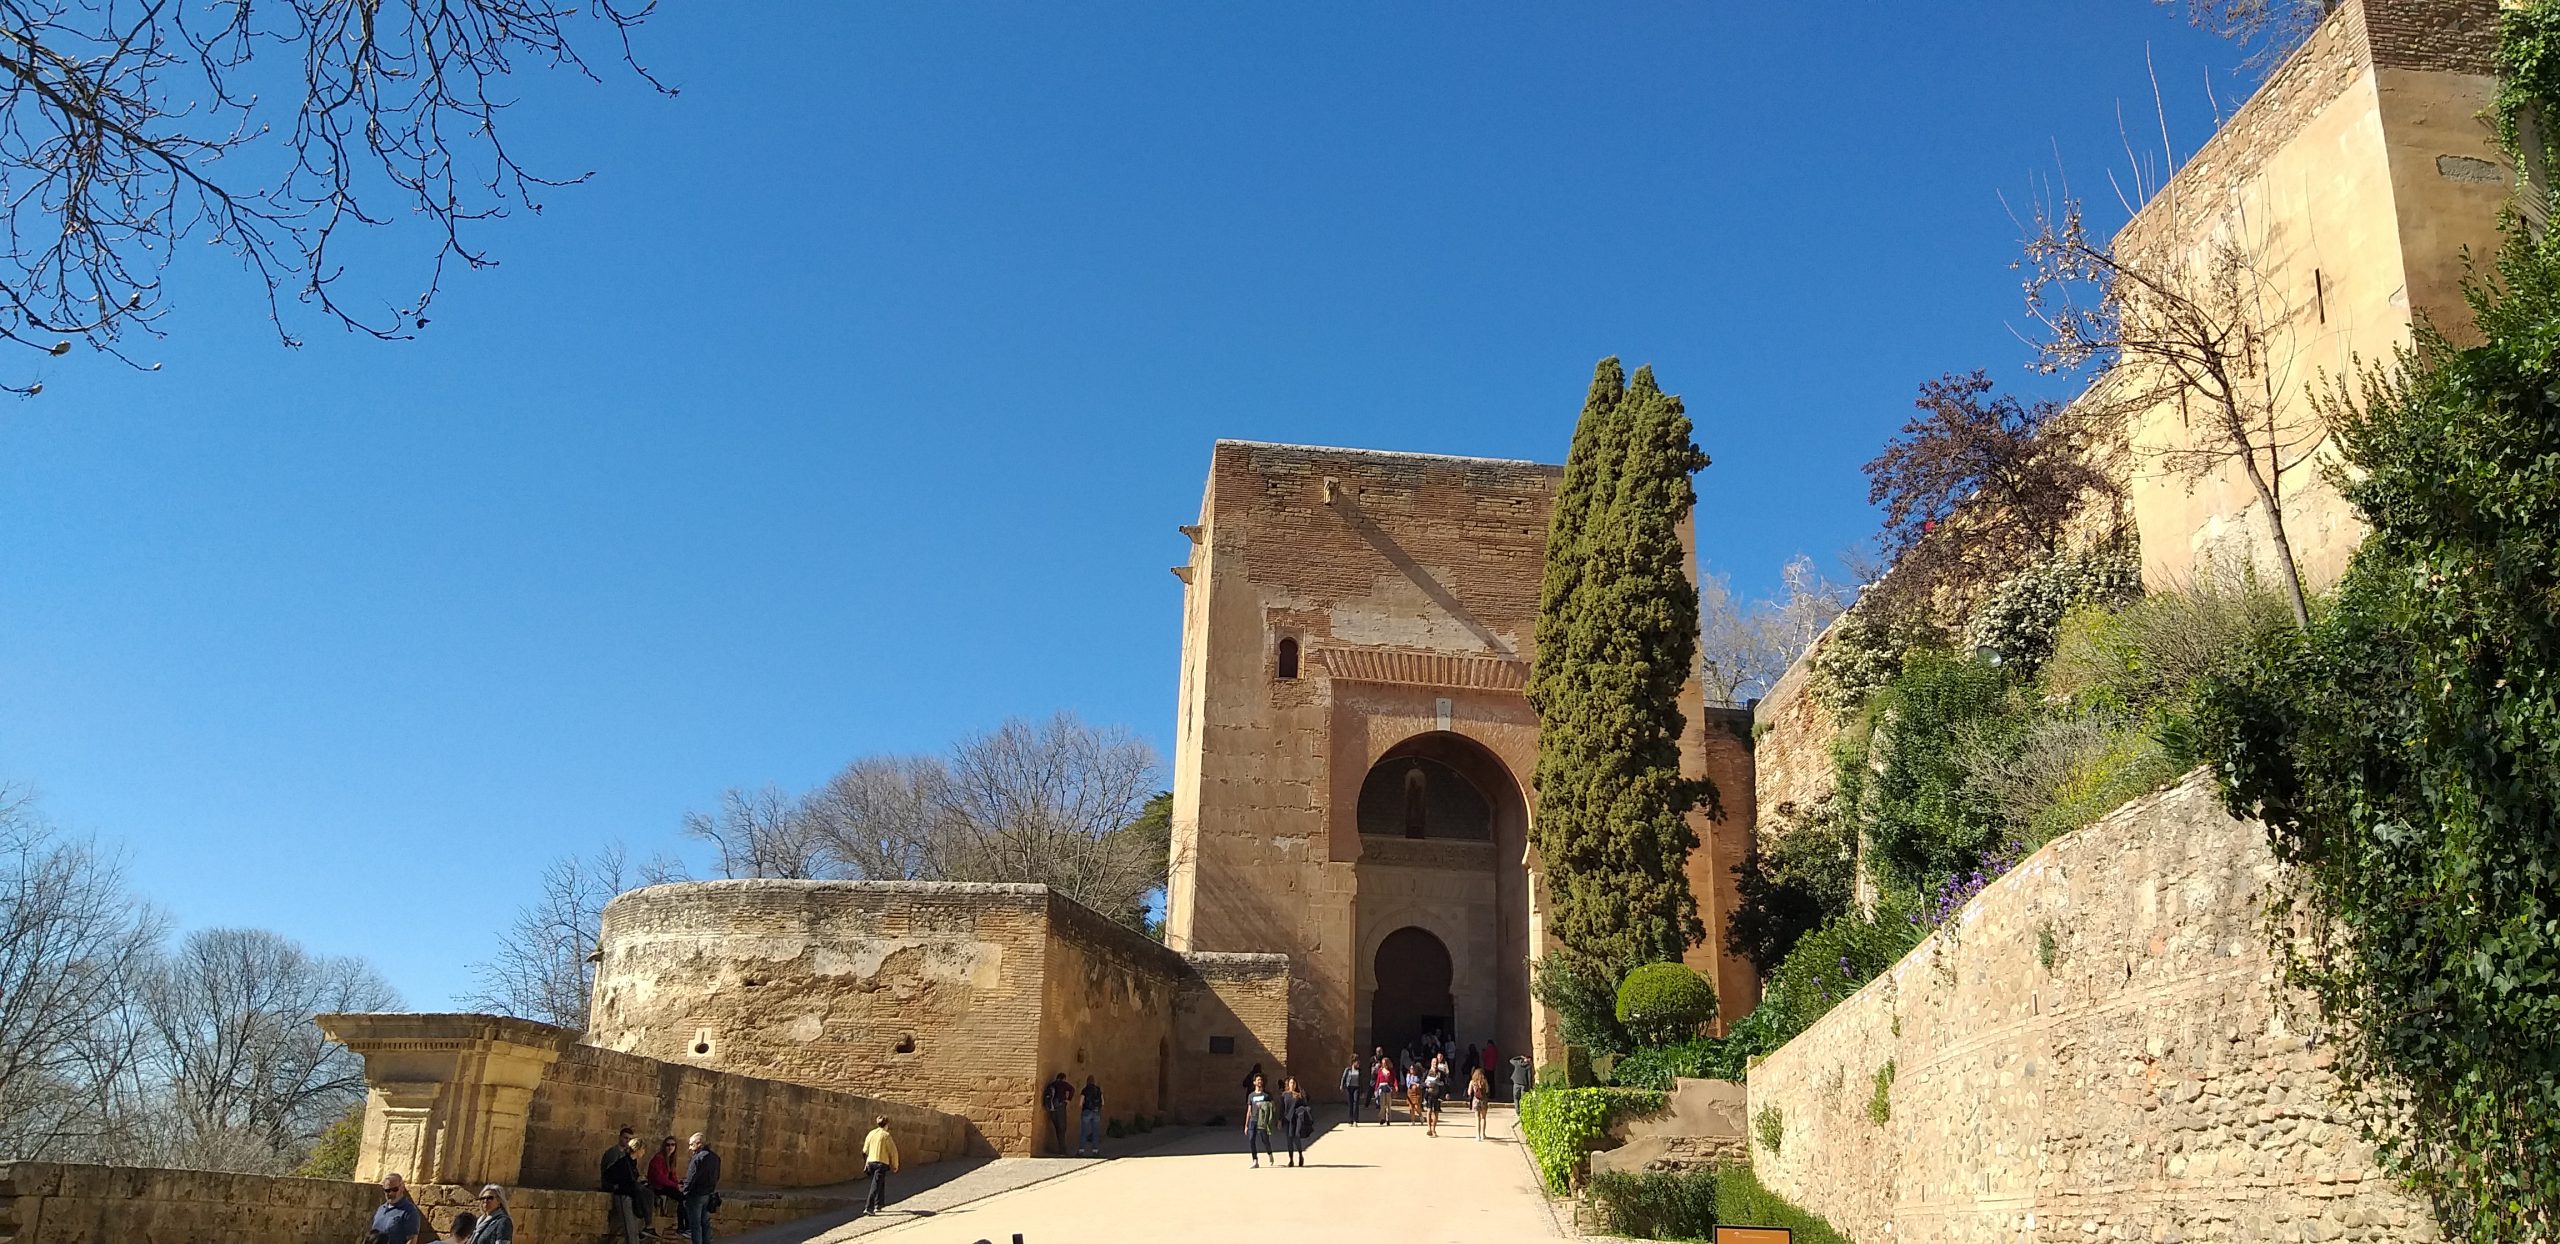 Wie bekommt man Tickets für die Alhambra in Granada?